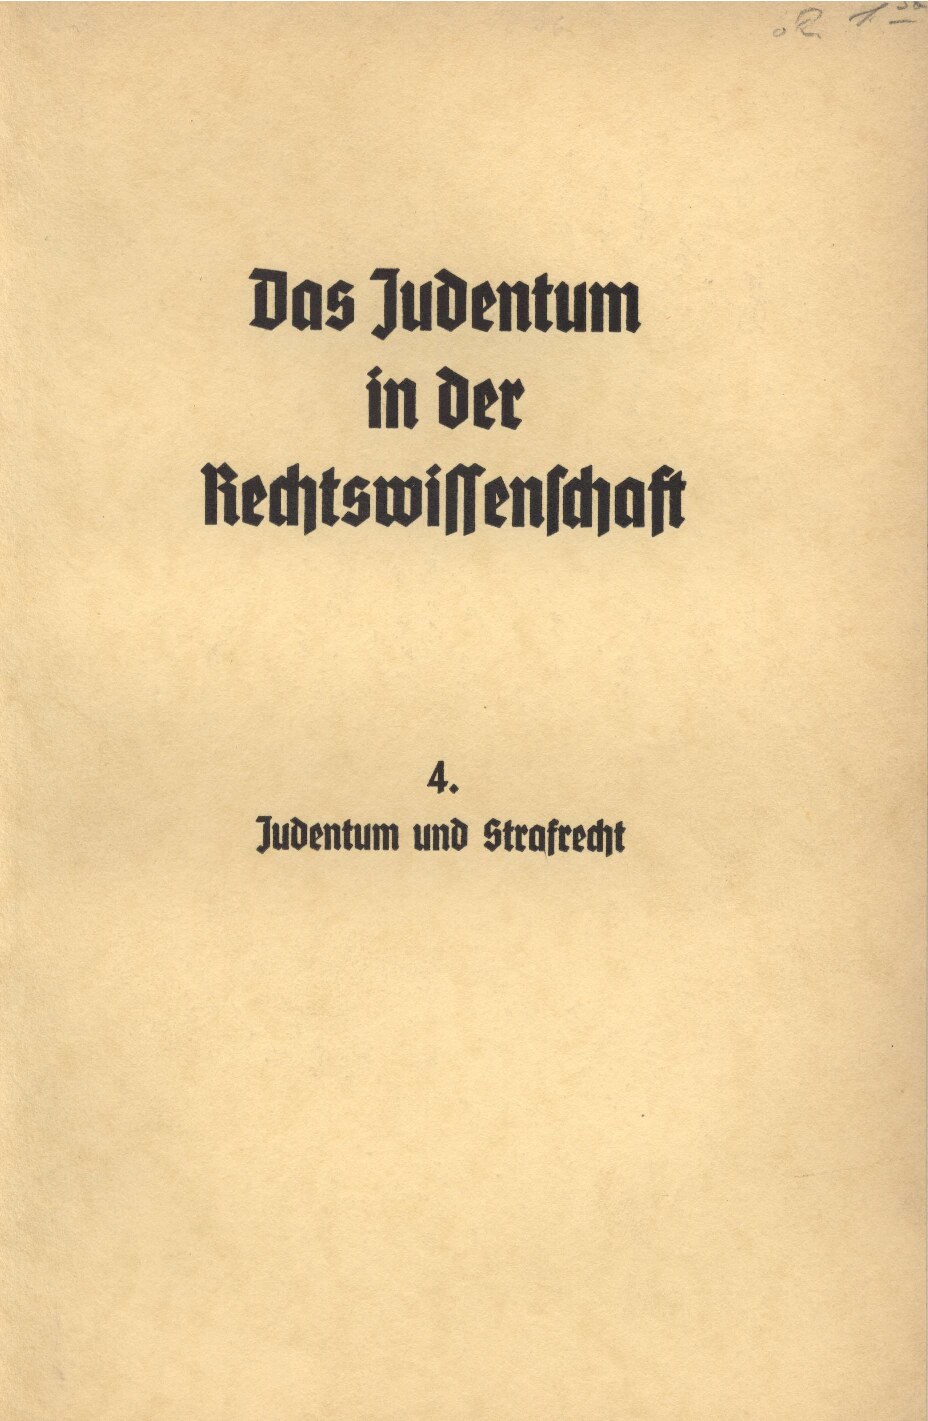 Das Judentum in der Rechtswissenschaft - 4. - Judentum und Strafrecht (1936, 44 S., Scan, Fraktur)